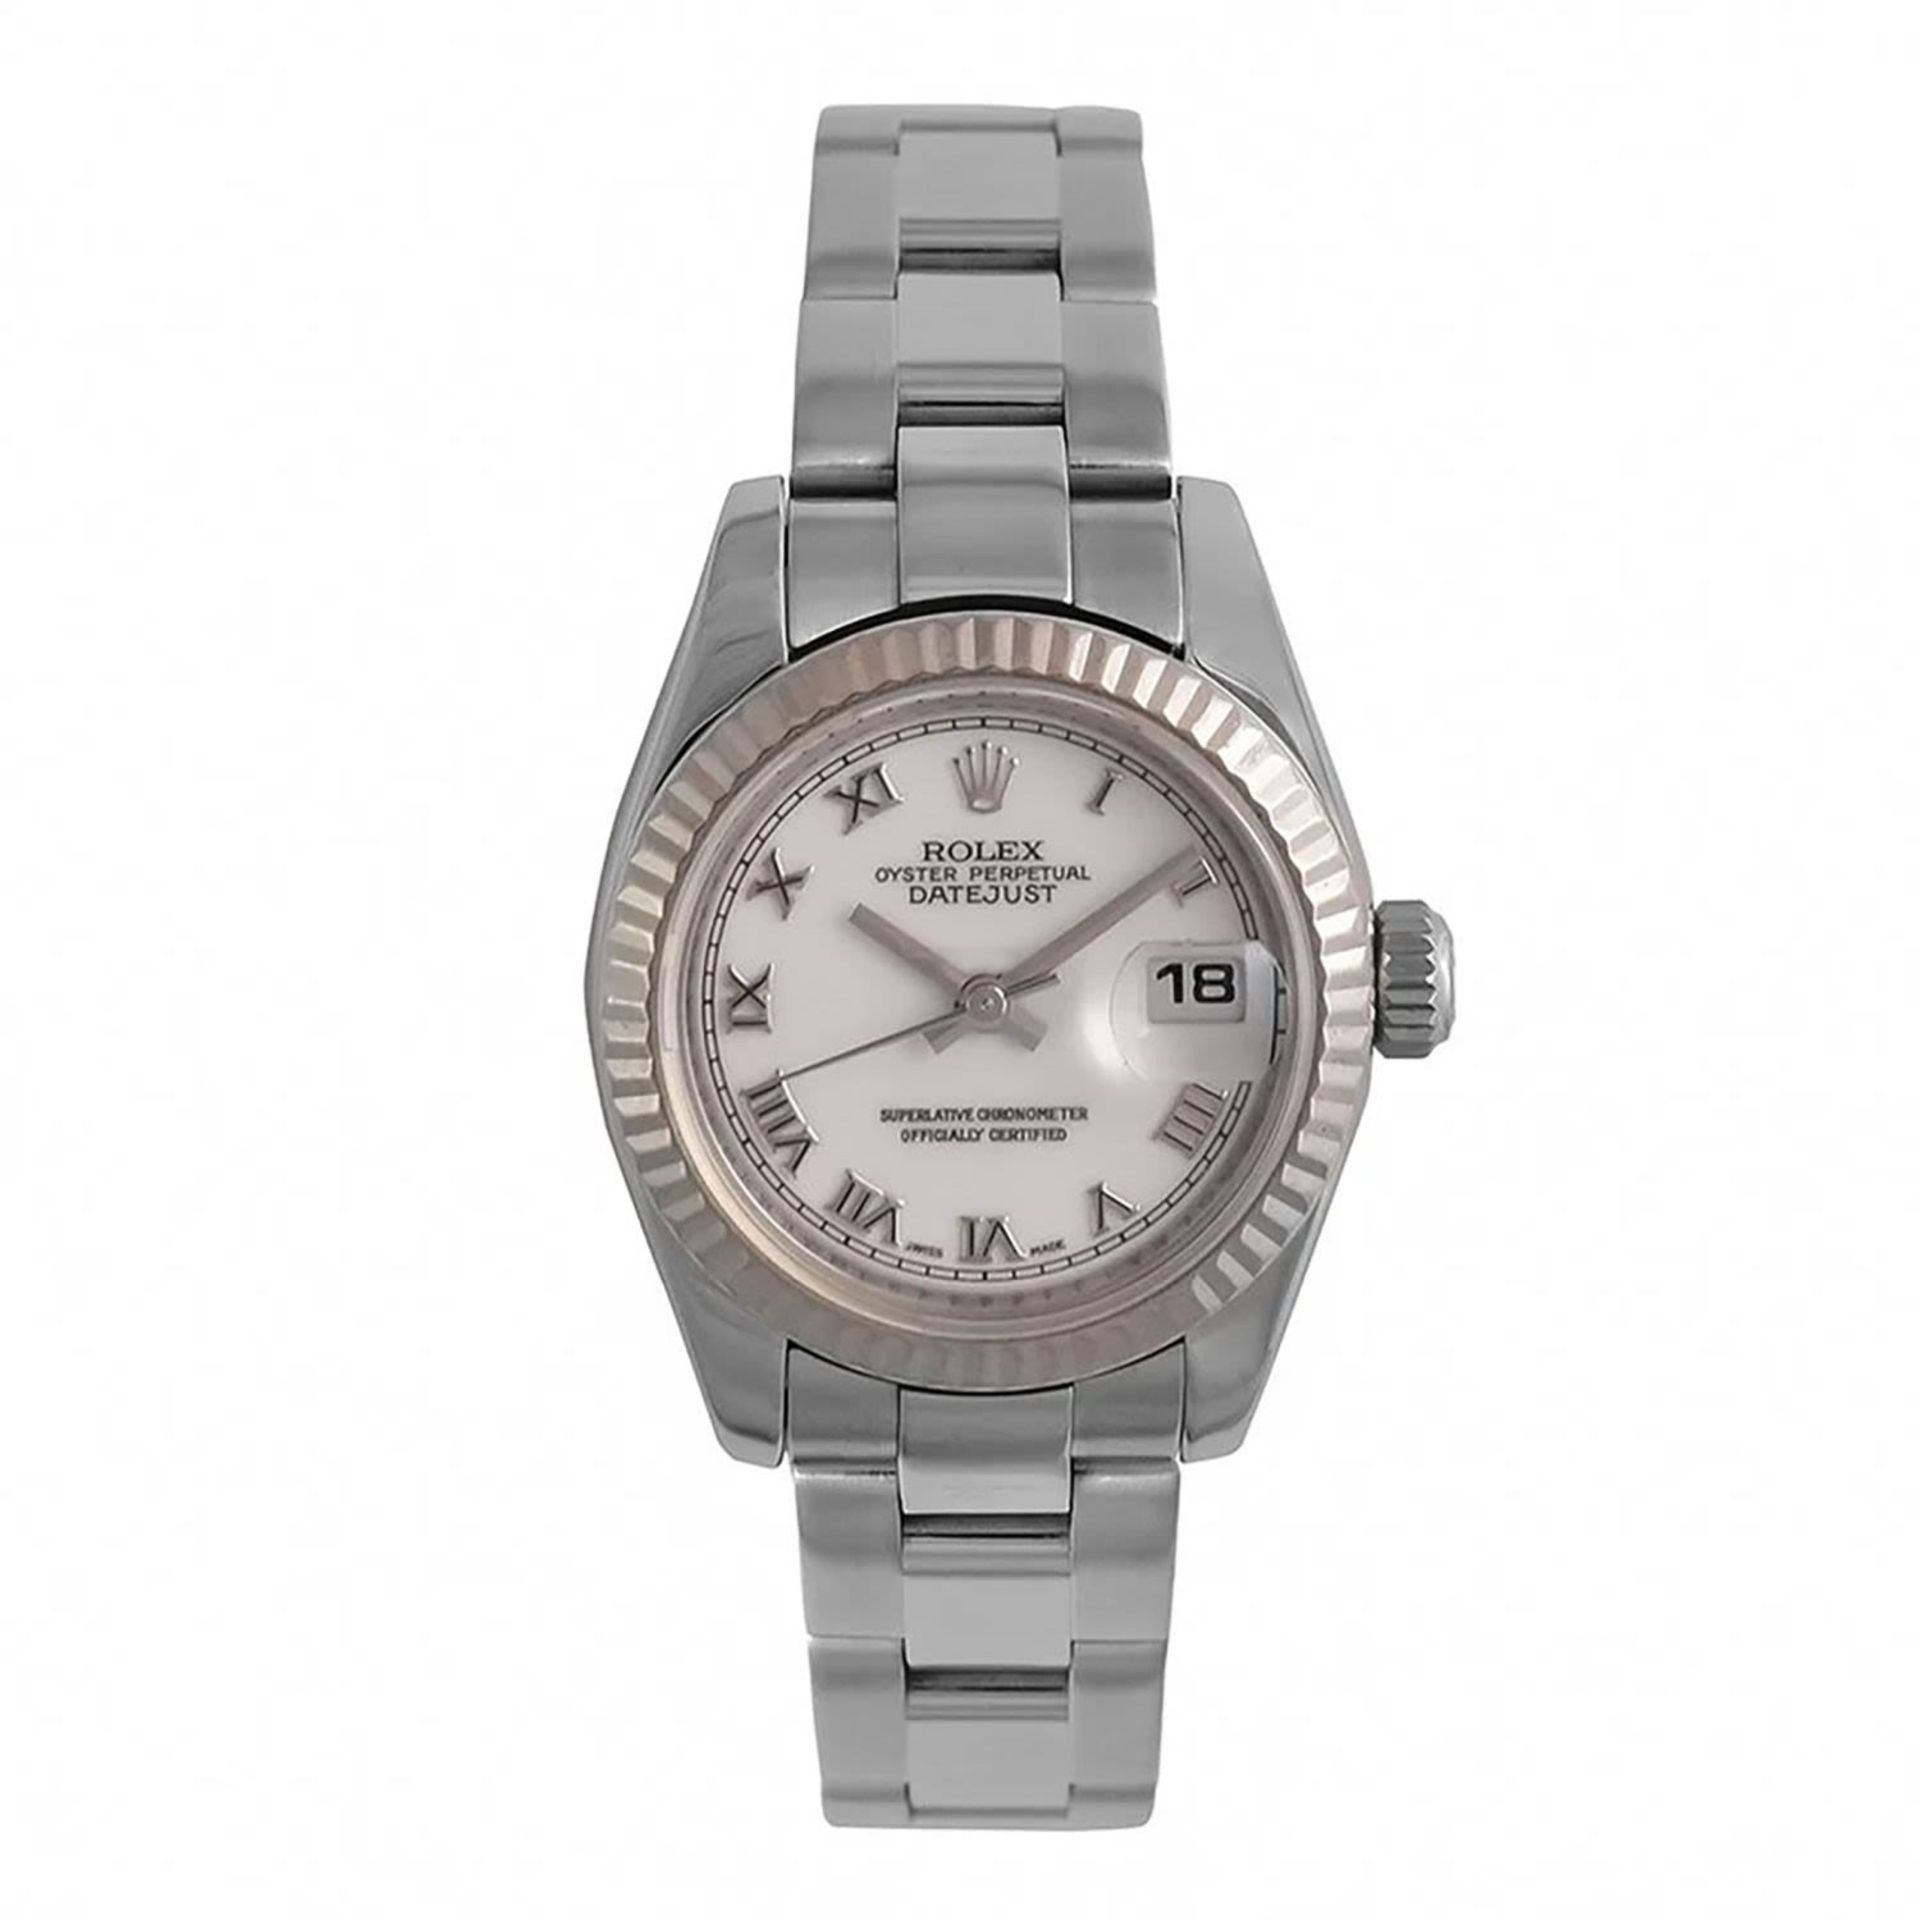 Rolex Lady Datejust wristwatch, year 2006